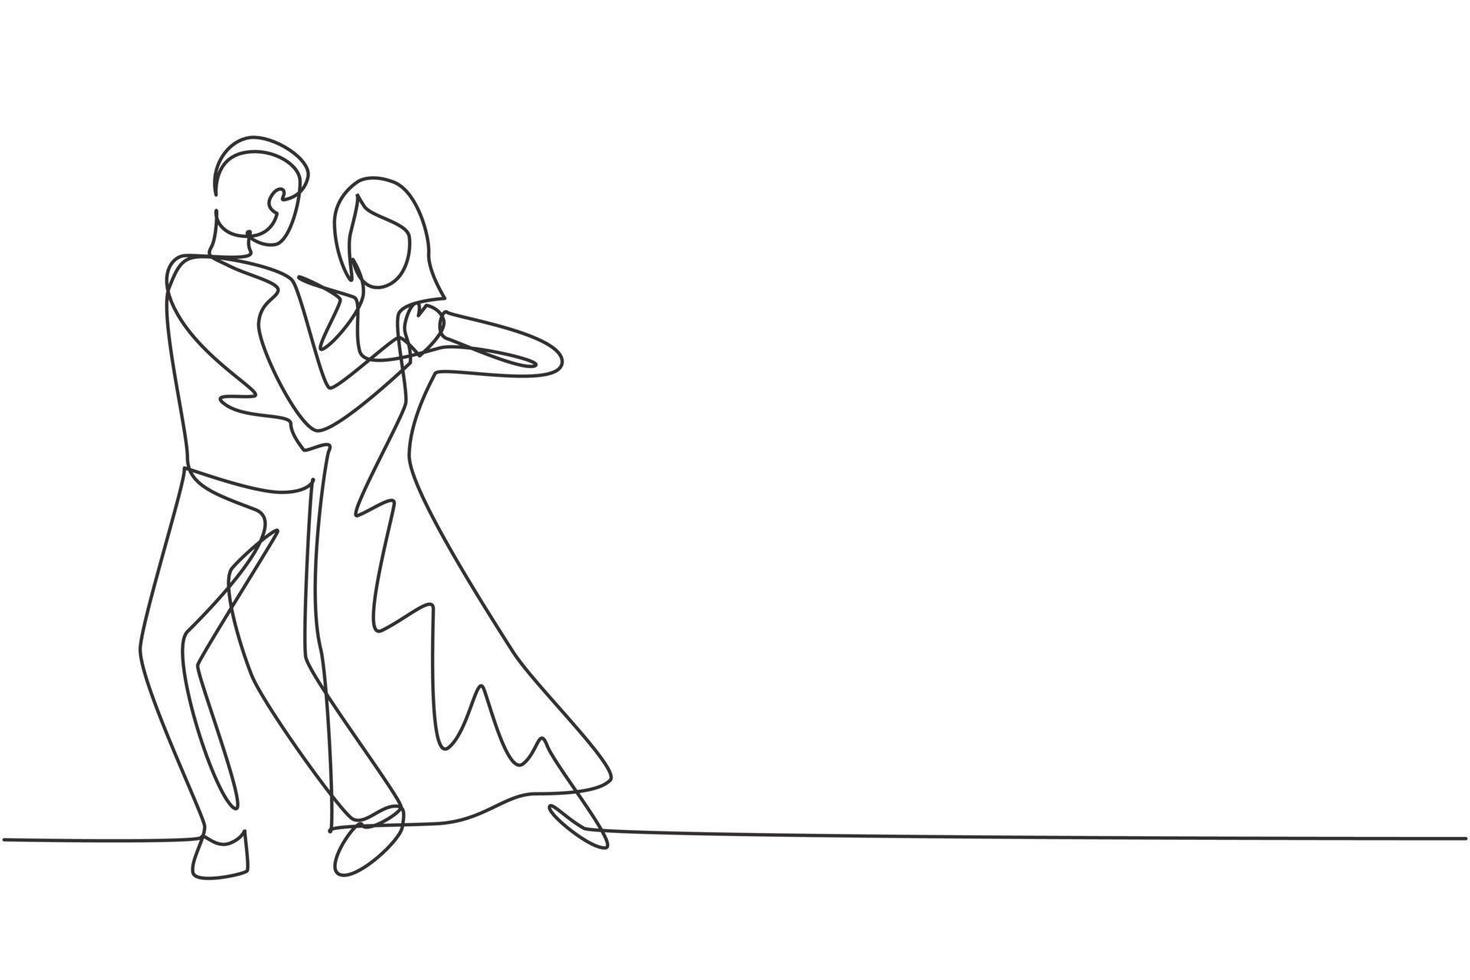 un seul dessin au trait homme femme danseur professionnel couple dansant le tango, danses de valse sur la piste de danse du concours de danse. mode de vie heureux. ligne continue moderne dessiner illustration vectorielle graphique vecteur